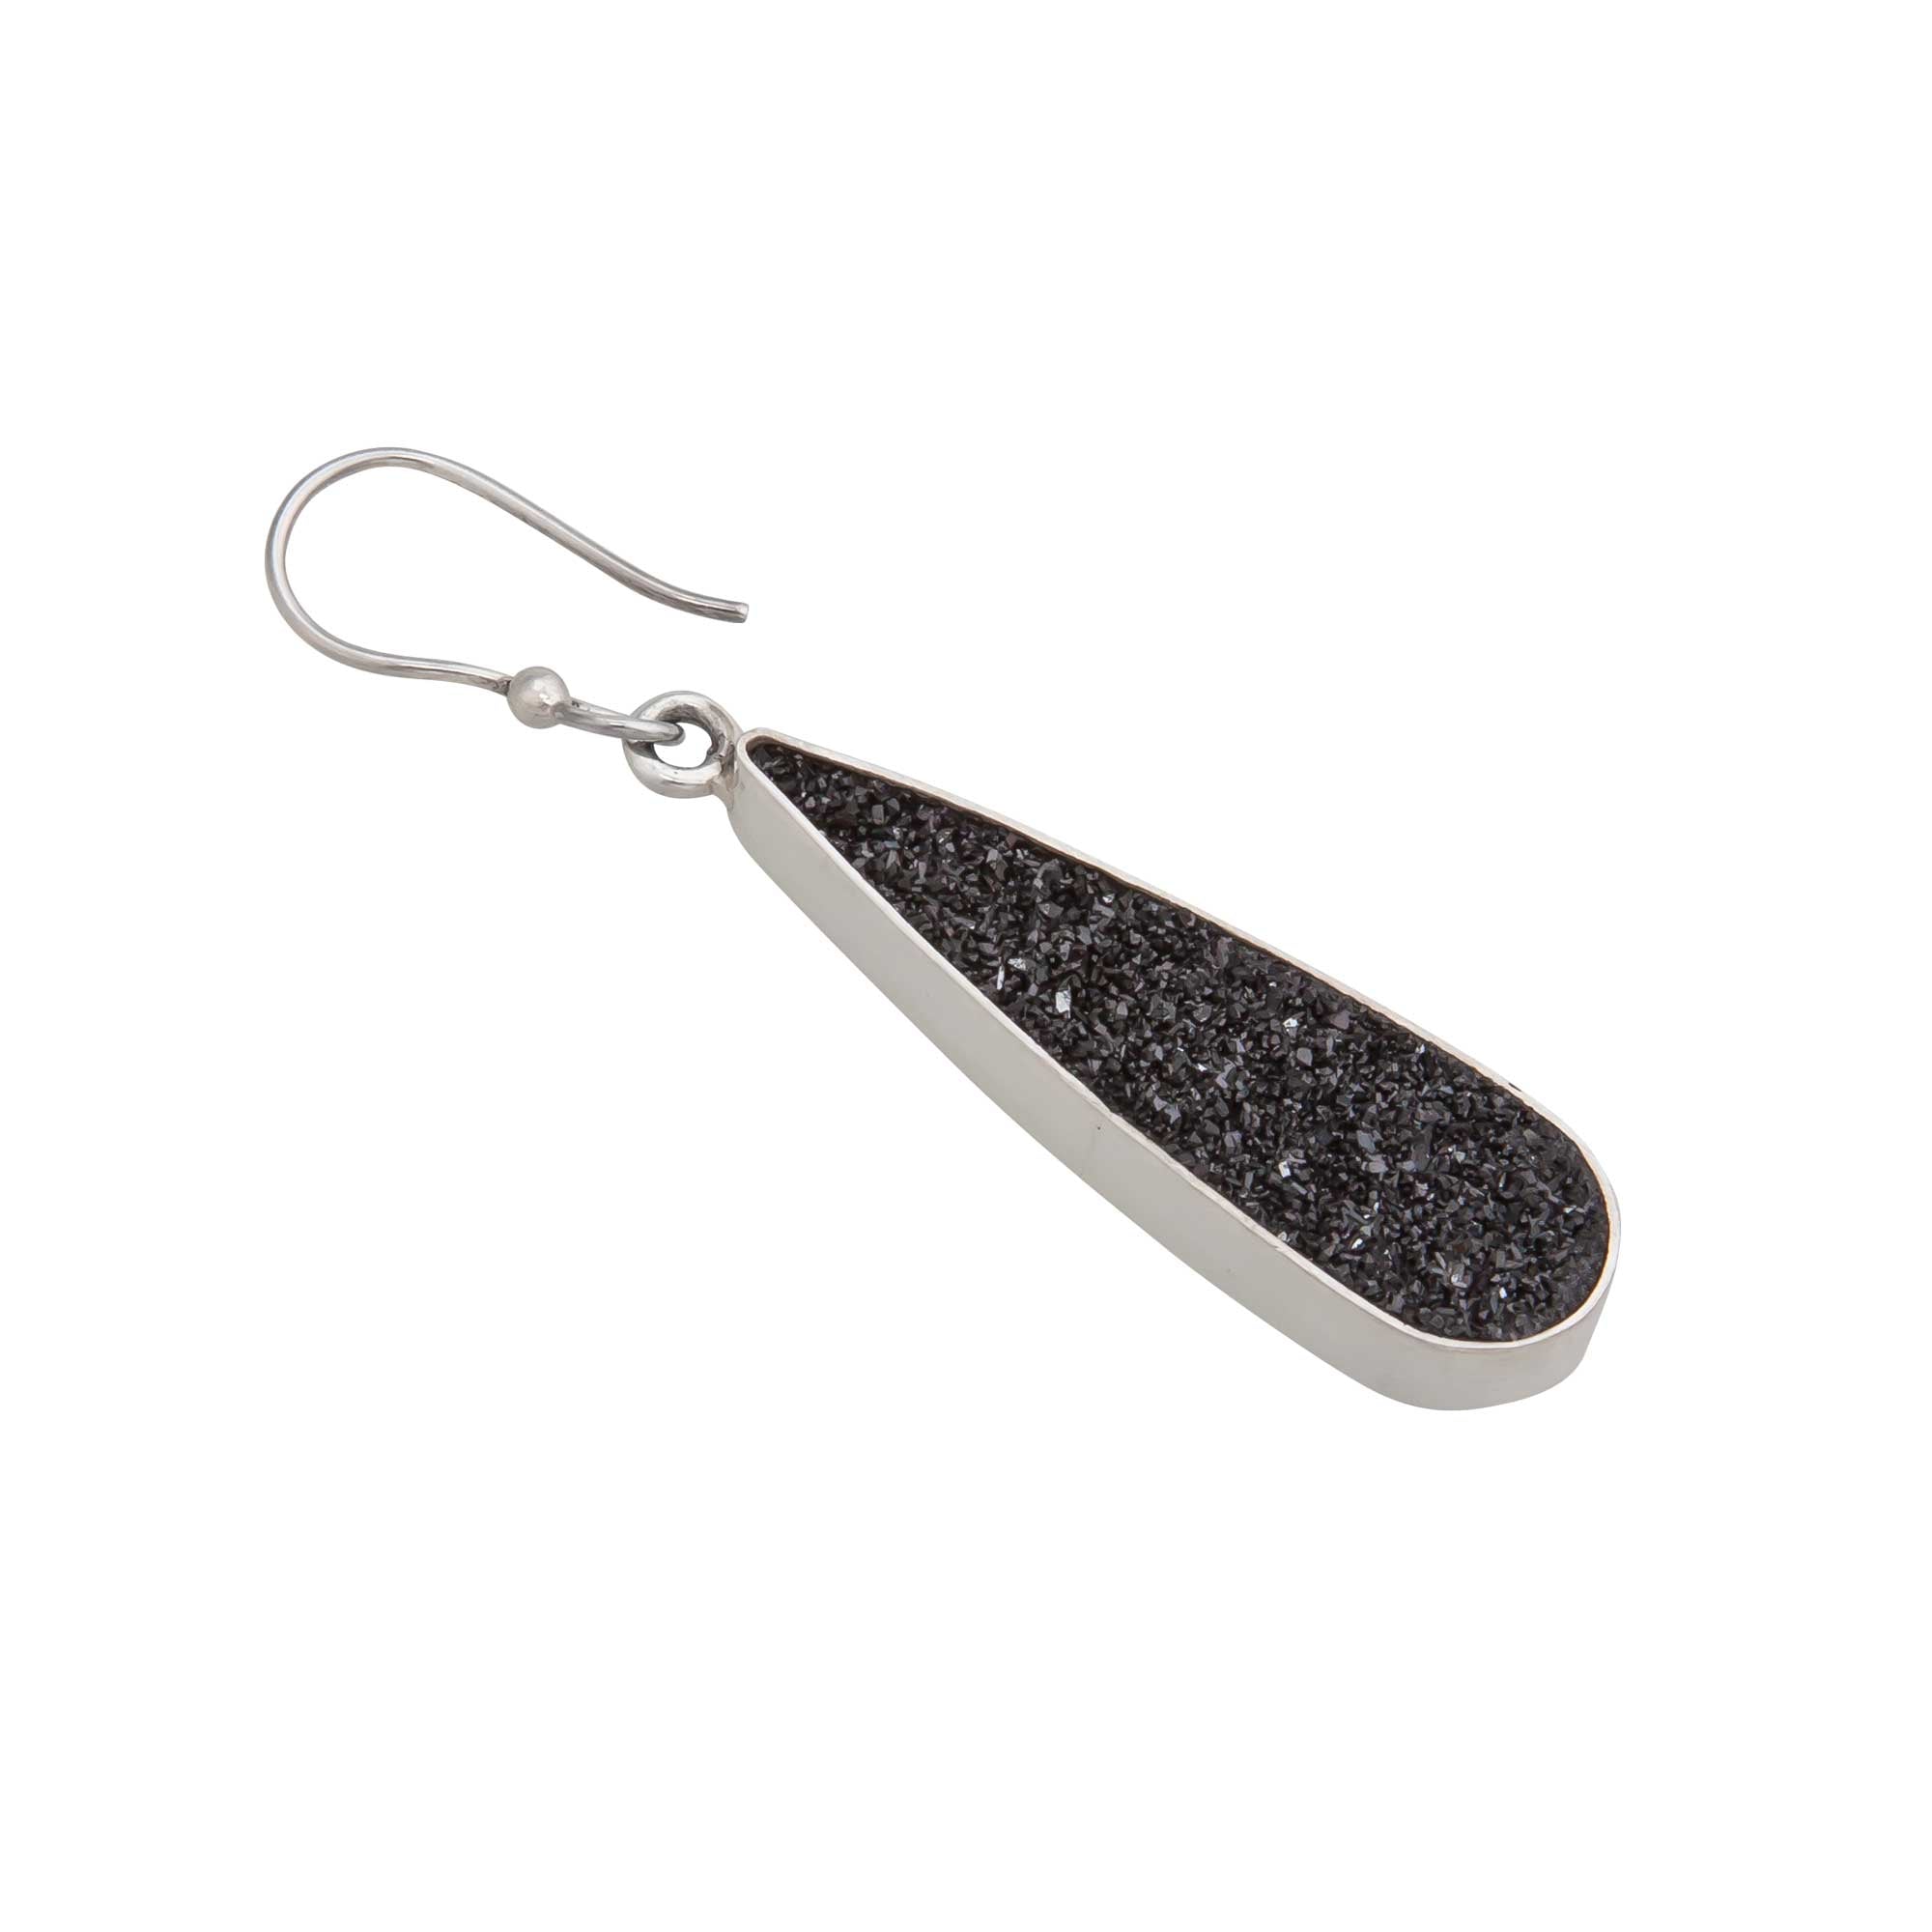 Sterling Silver Teardrop Black Druse Drop Earrings | Charles Albert Jewelry